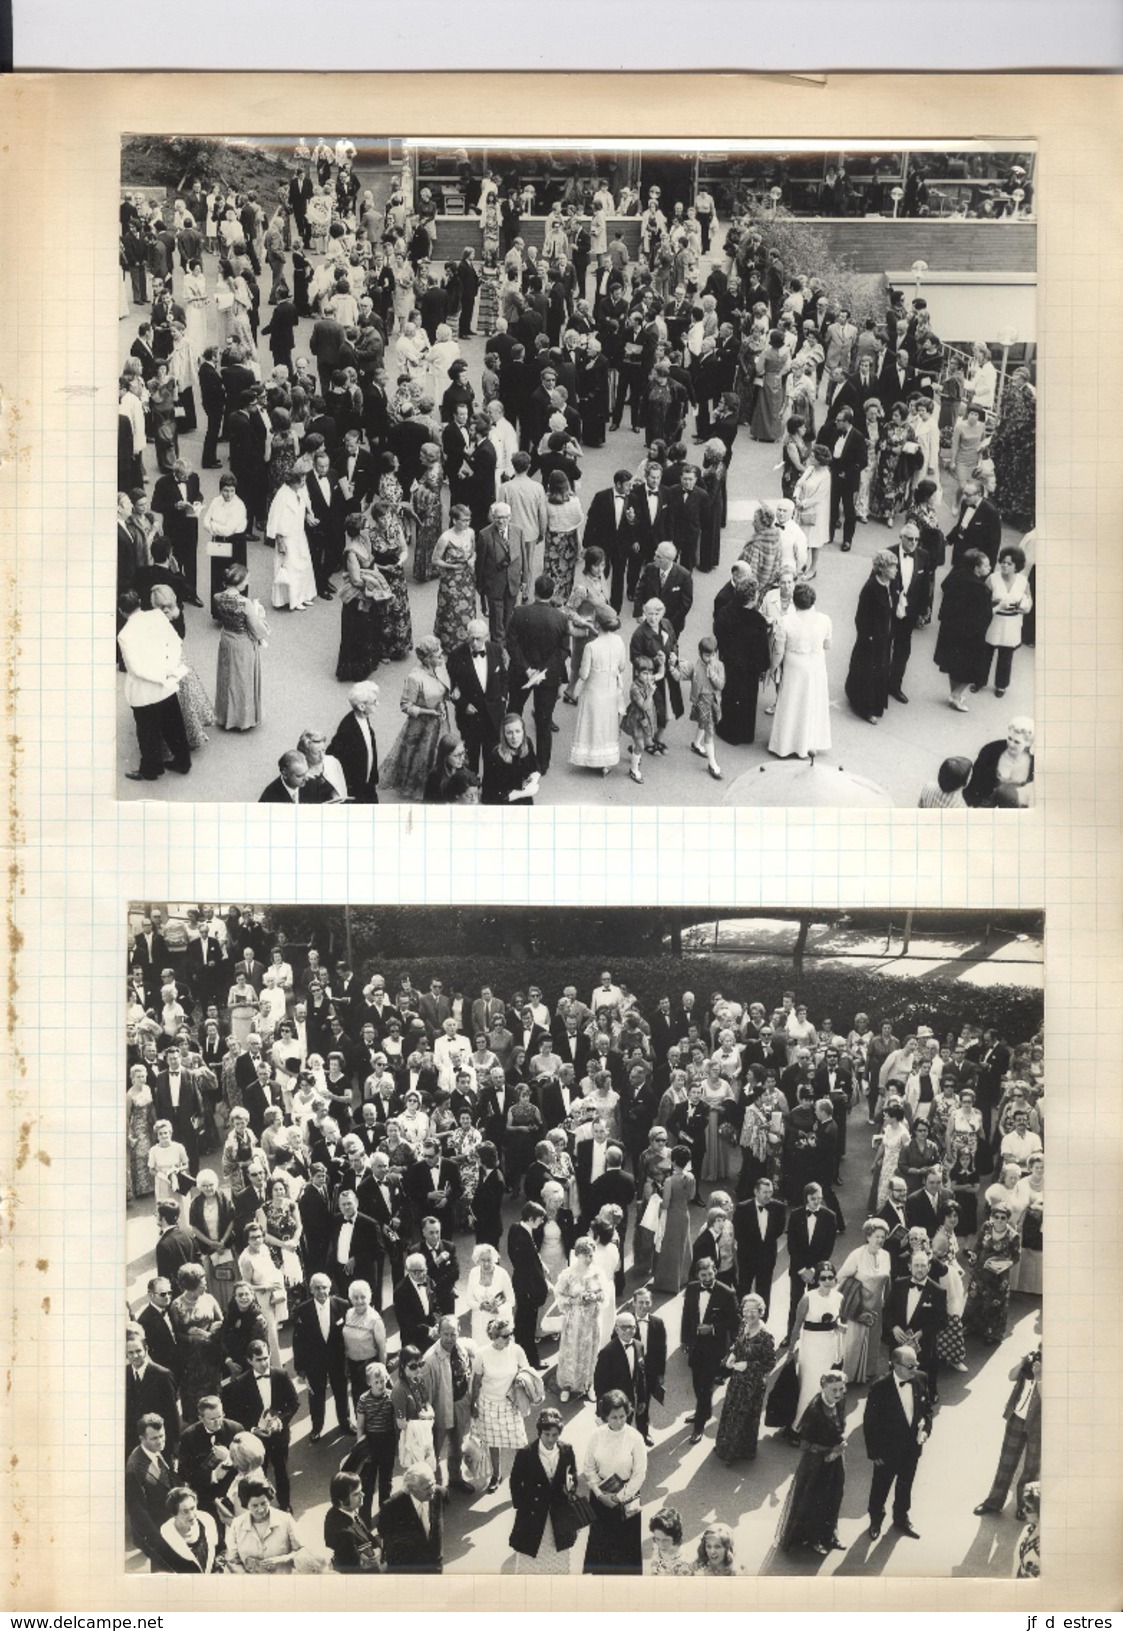 Bayreuth Wagner 1972 Documents voyage tickets, carte postale de réprésentation, photos spectateurs, autographe...